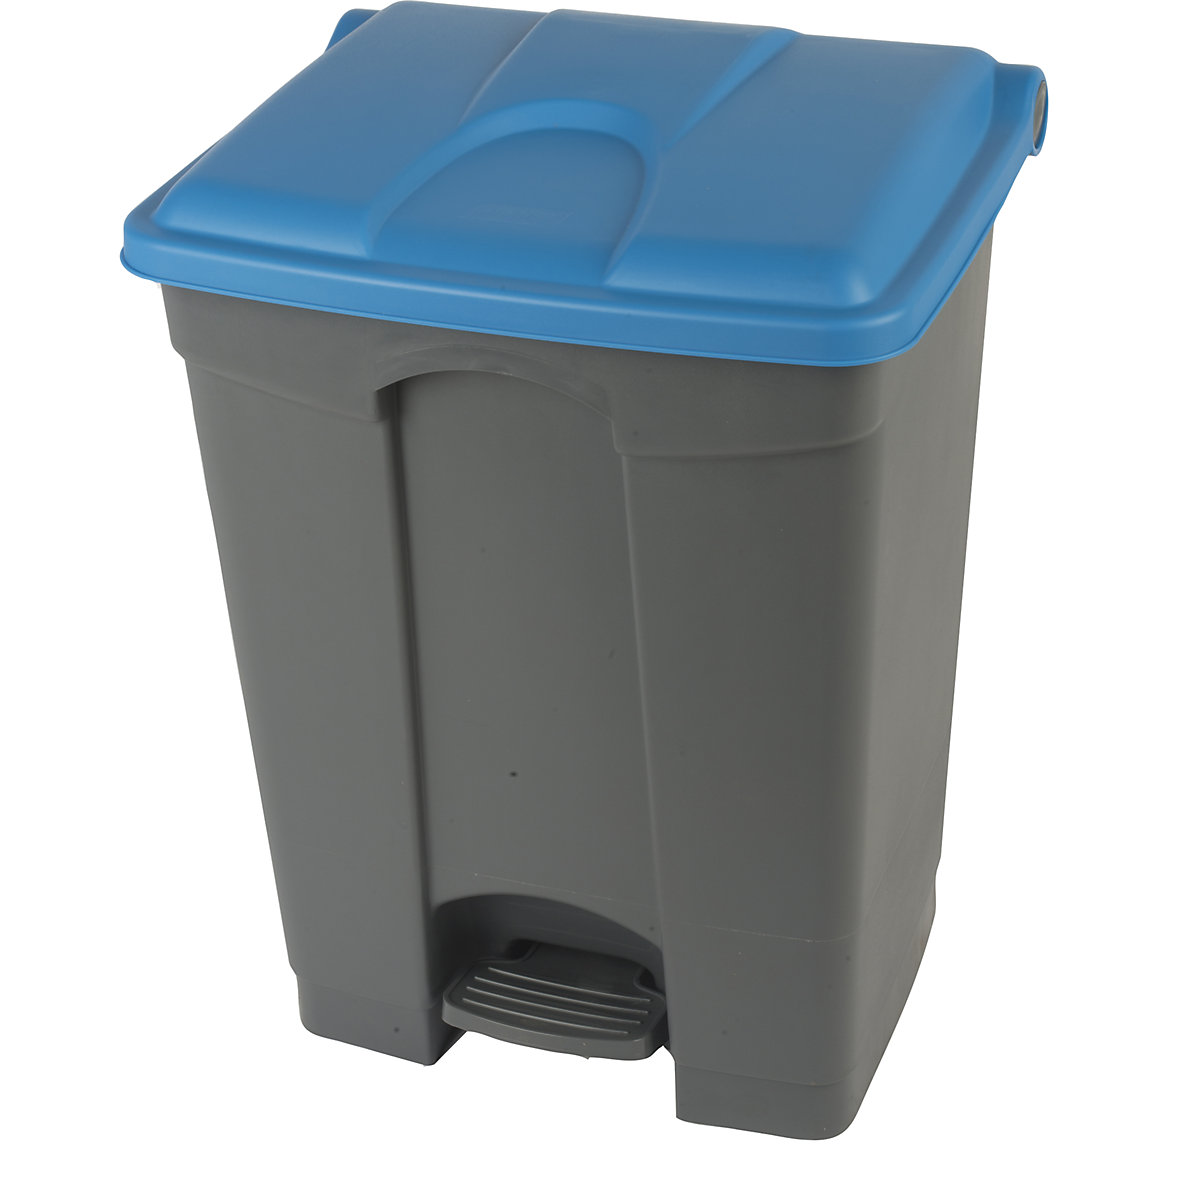 Spremnik za otpad s papučicom, volumen 70 l, ŠxVxD 505 x 675 x 415 mm, u sivoj boji, poklopac u plavoj boji-8